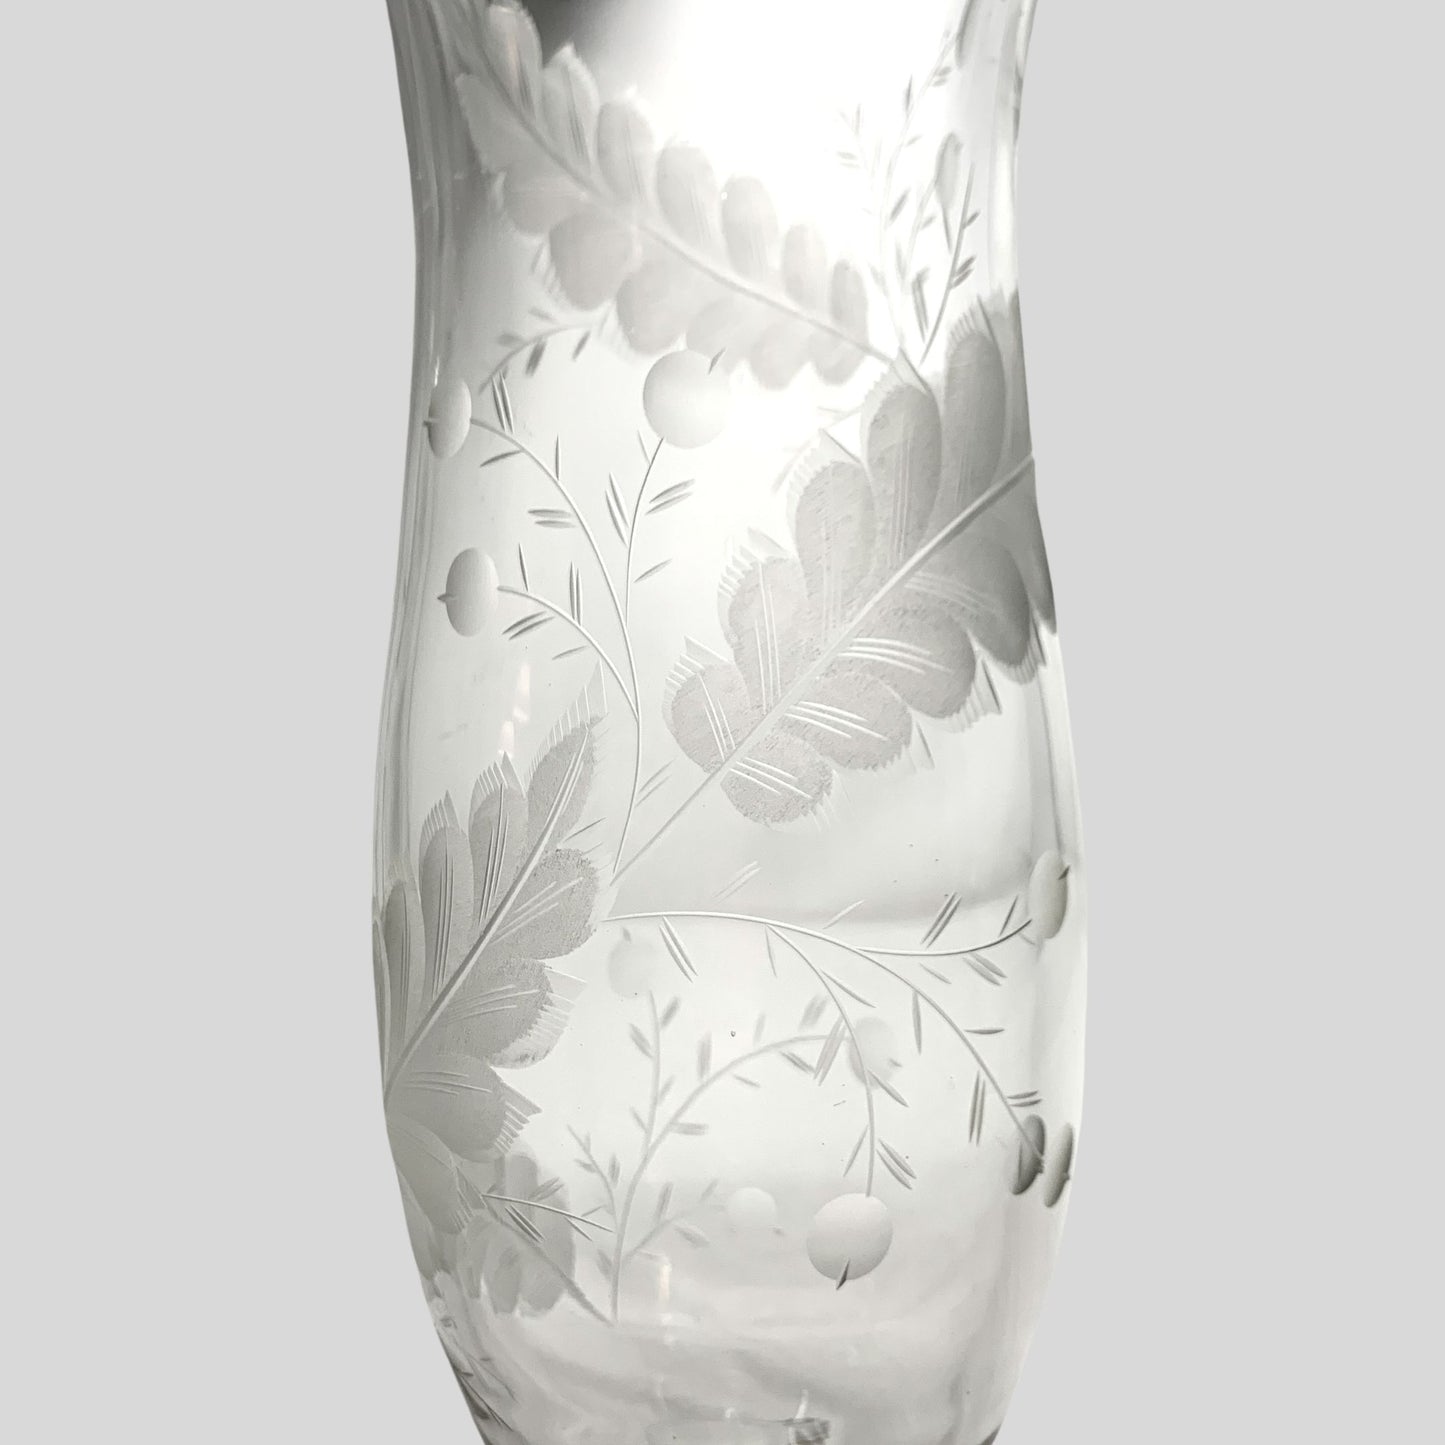 Pair of Vintage 13" Etched Crystal Hurricane Vases (2)